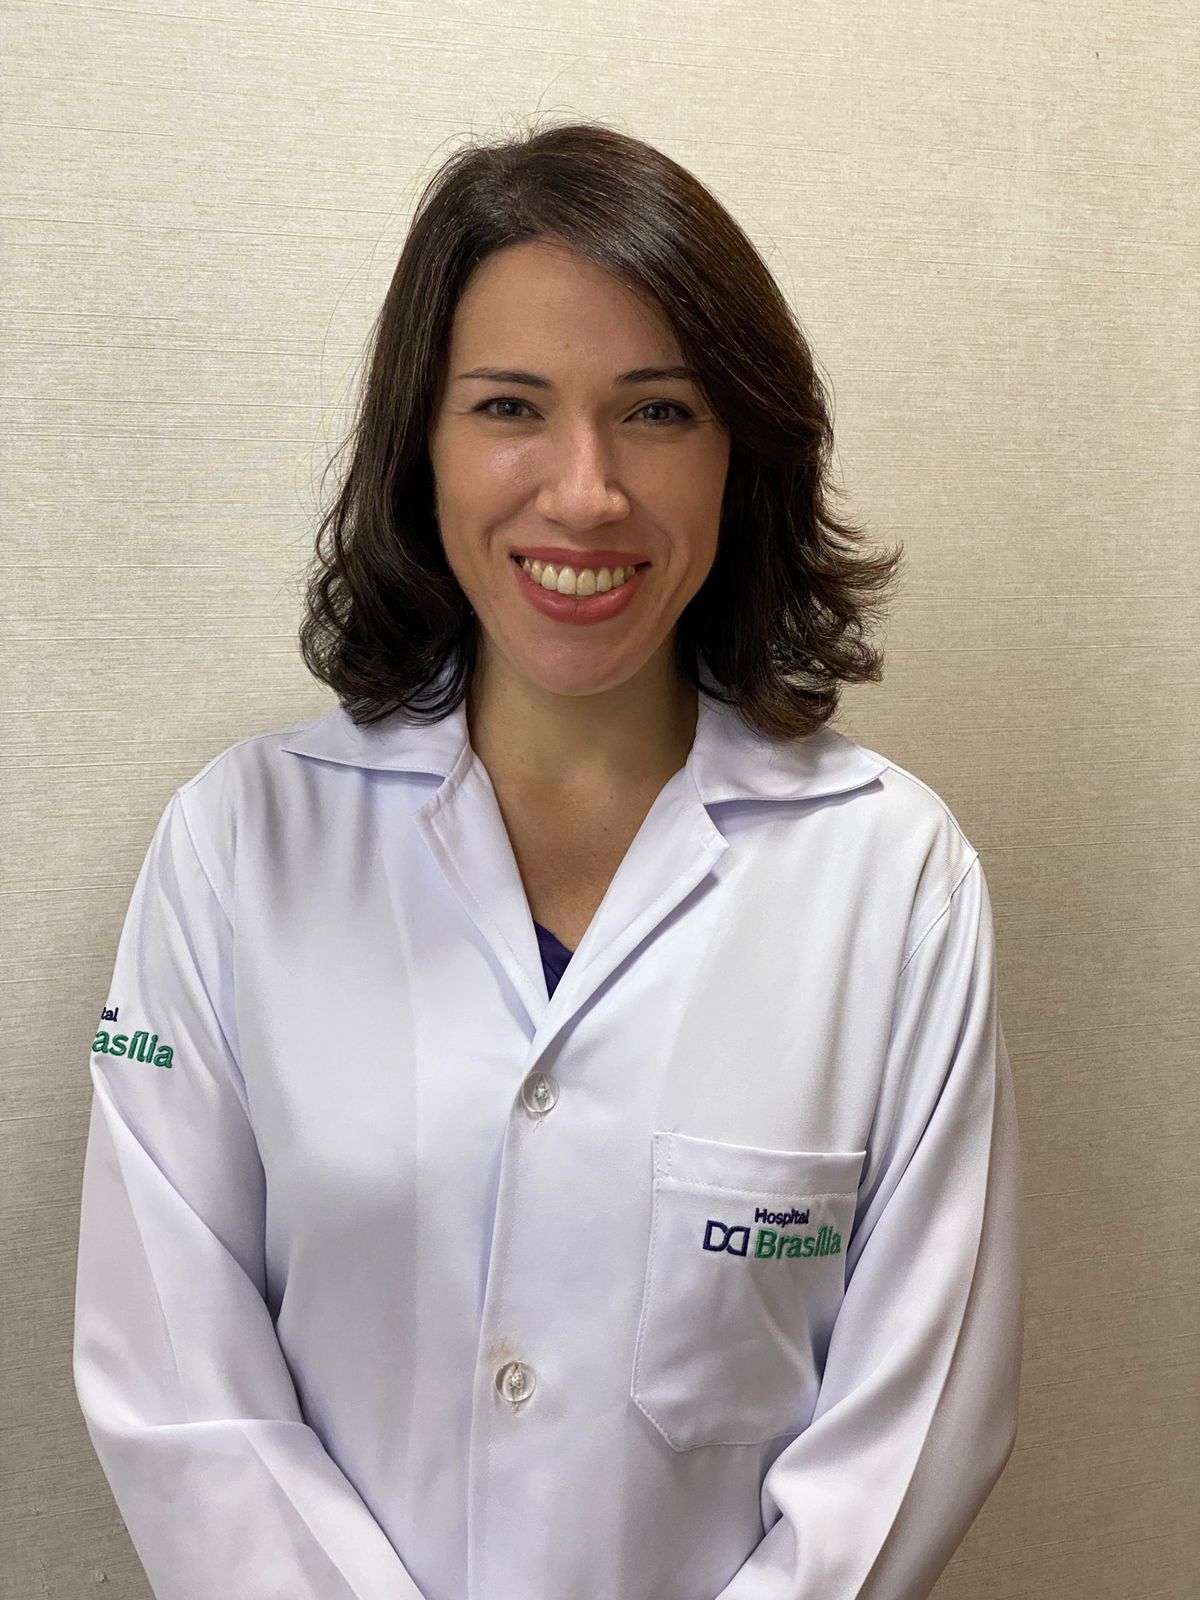 Leticia Rebelo, Neurologist at Brasilia Hospital -